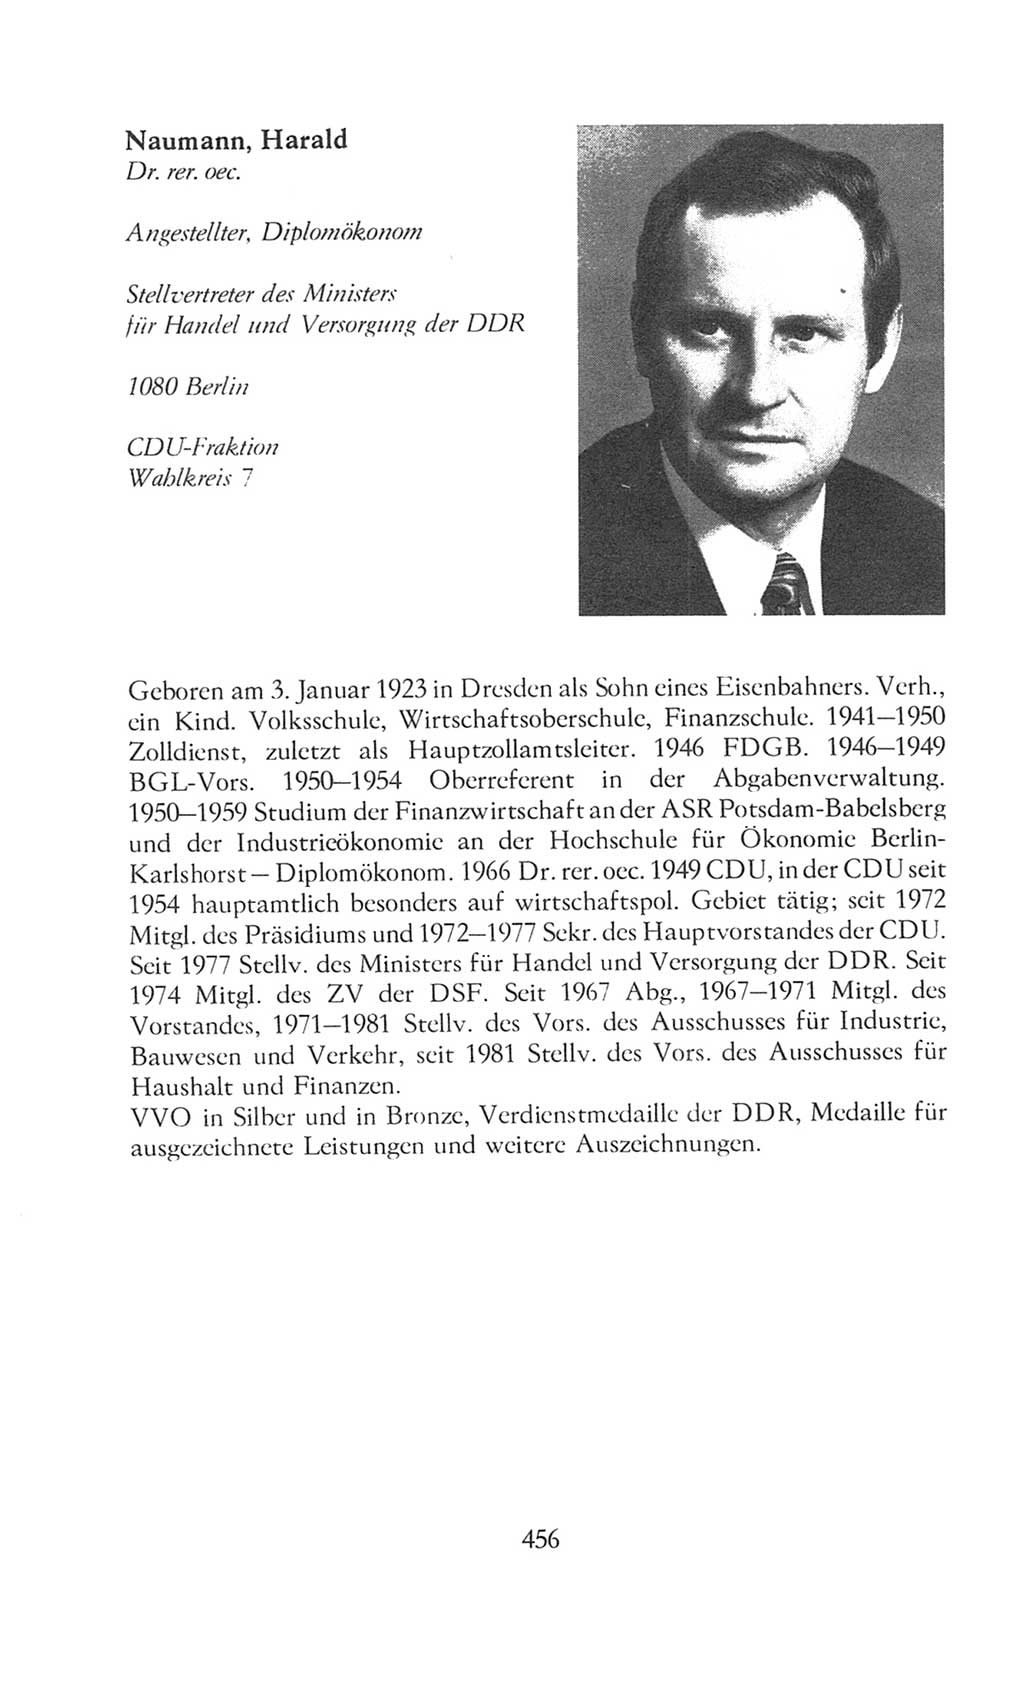 Volkskammer (VK) der Deutschen Demokratischen Republik (DDR), 8. Wahlperiode 1981-1986, Seite 456 (VK. DDR 8. WP. 1981-1986, S. 456)